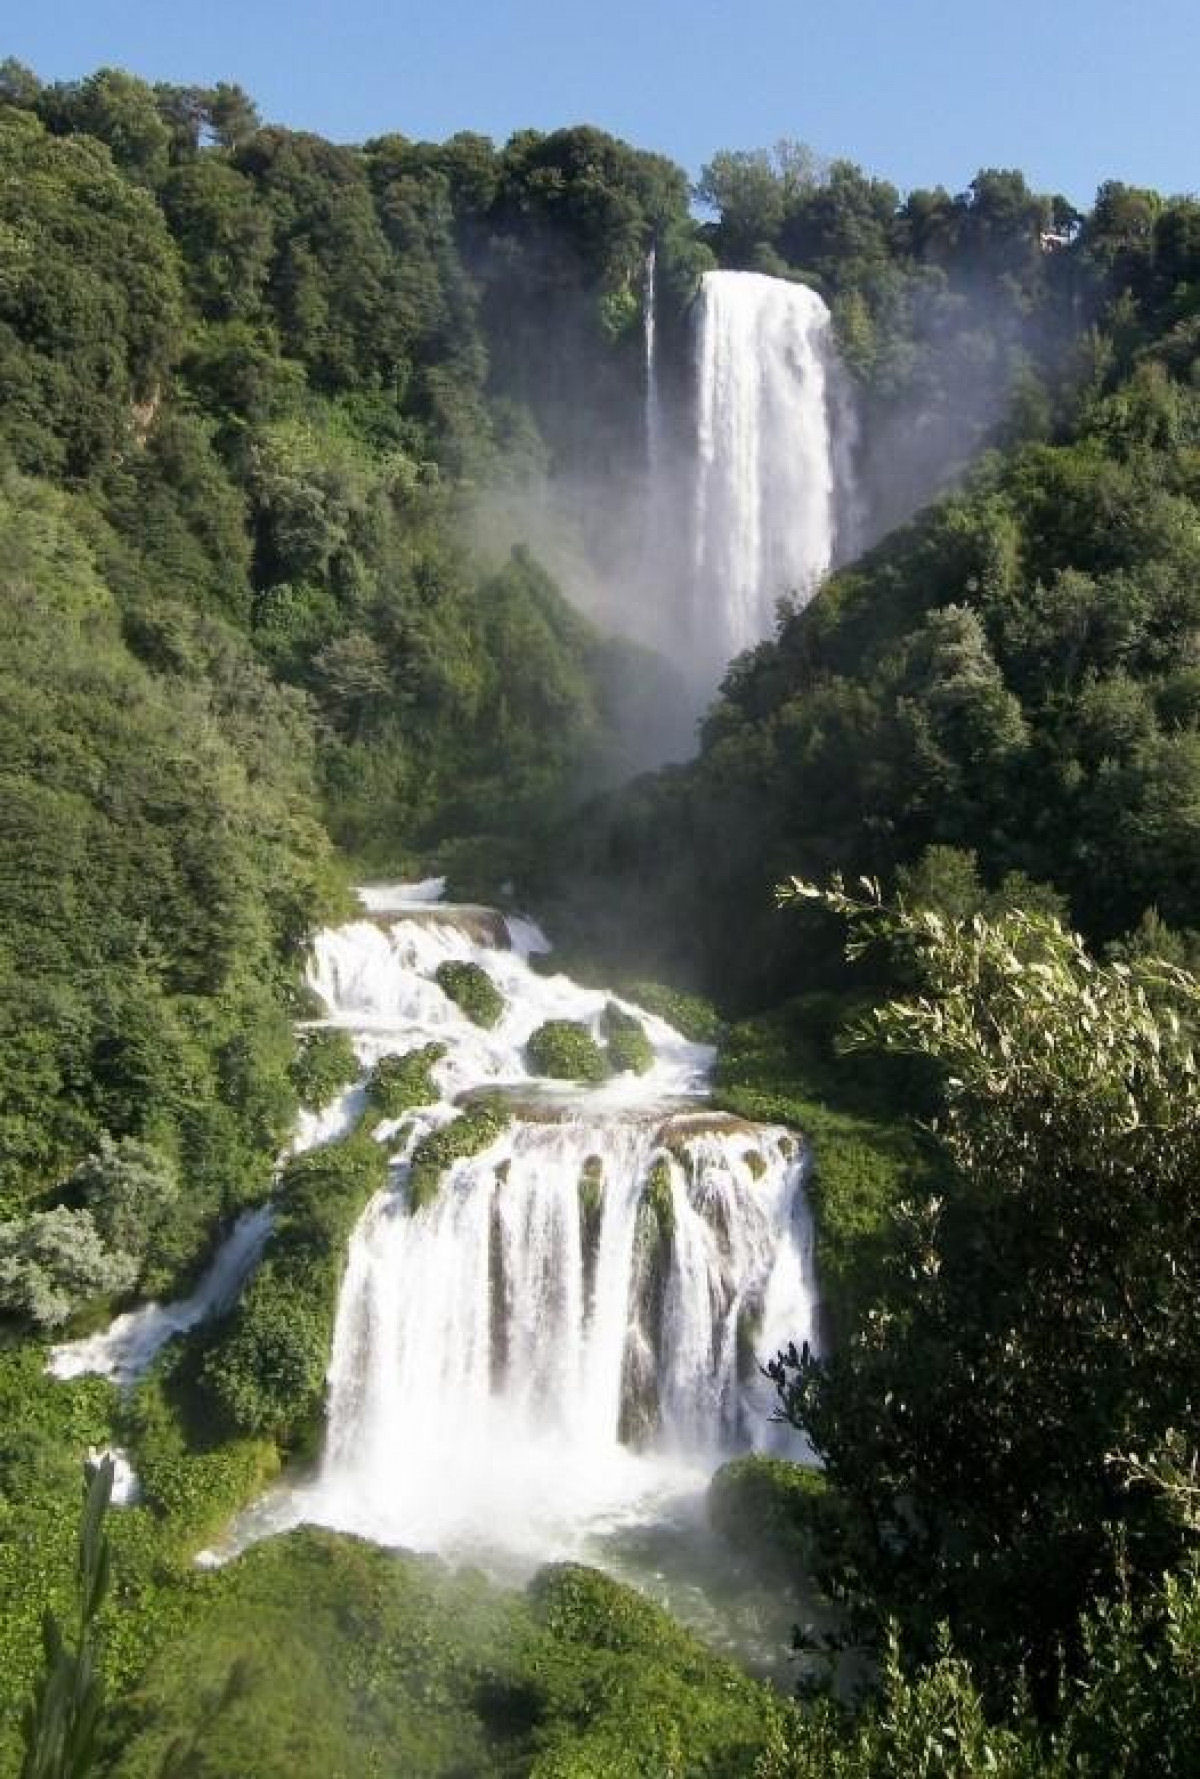 Criada pelos romanos em 271 a.C, Mármore, a cachoeira artificial mais alta do mundo